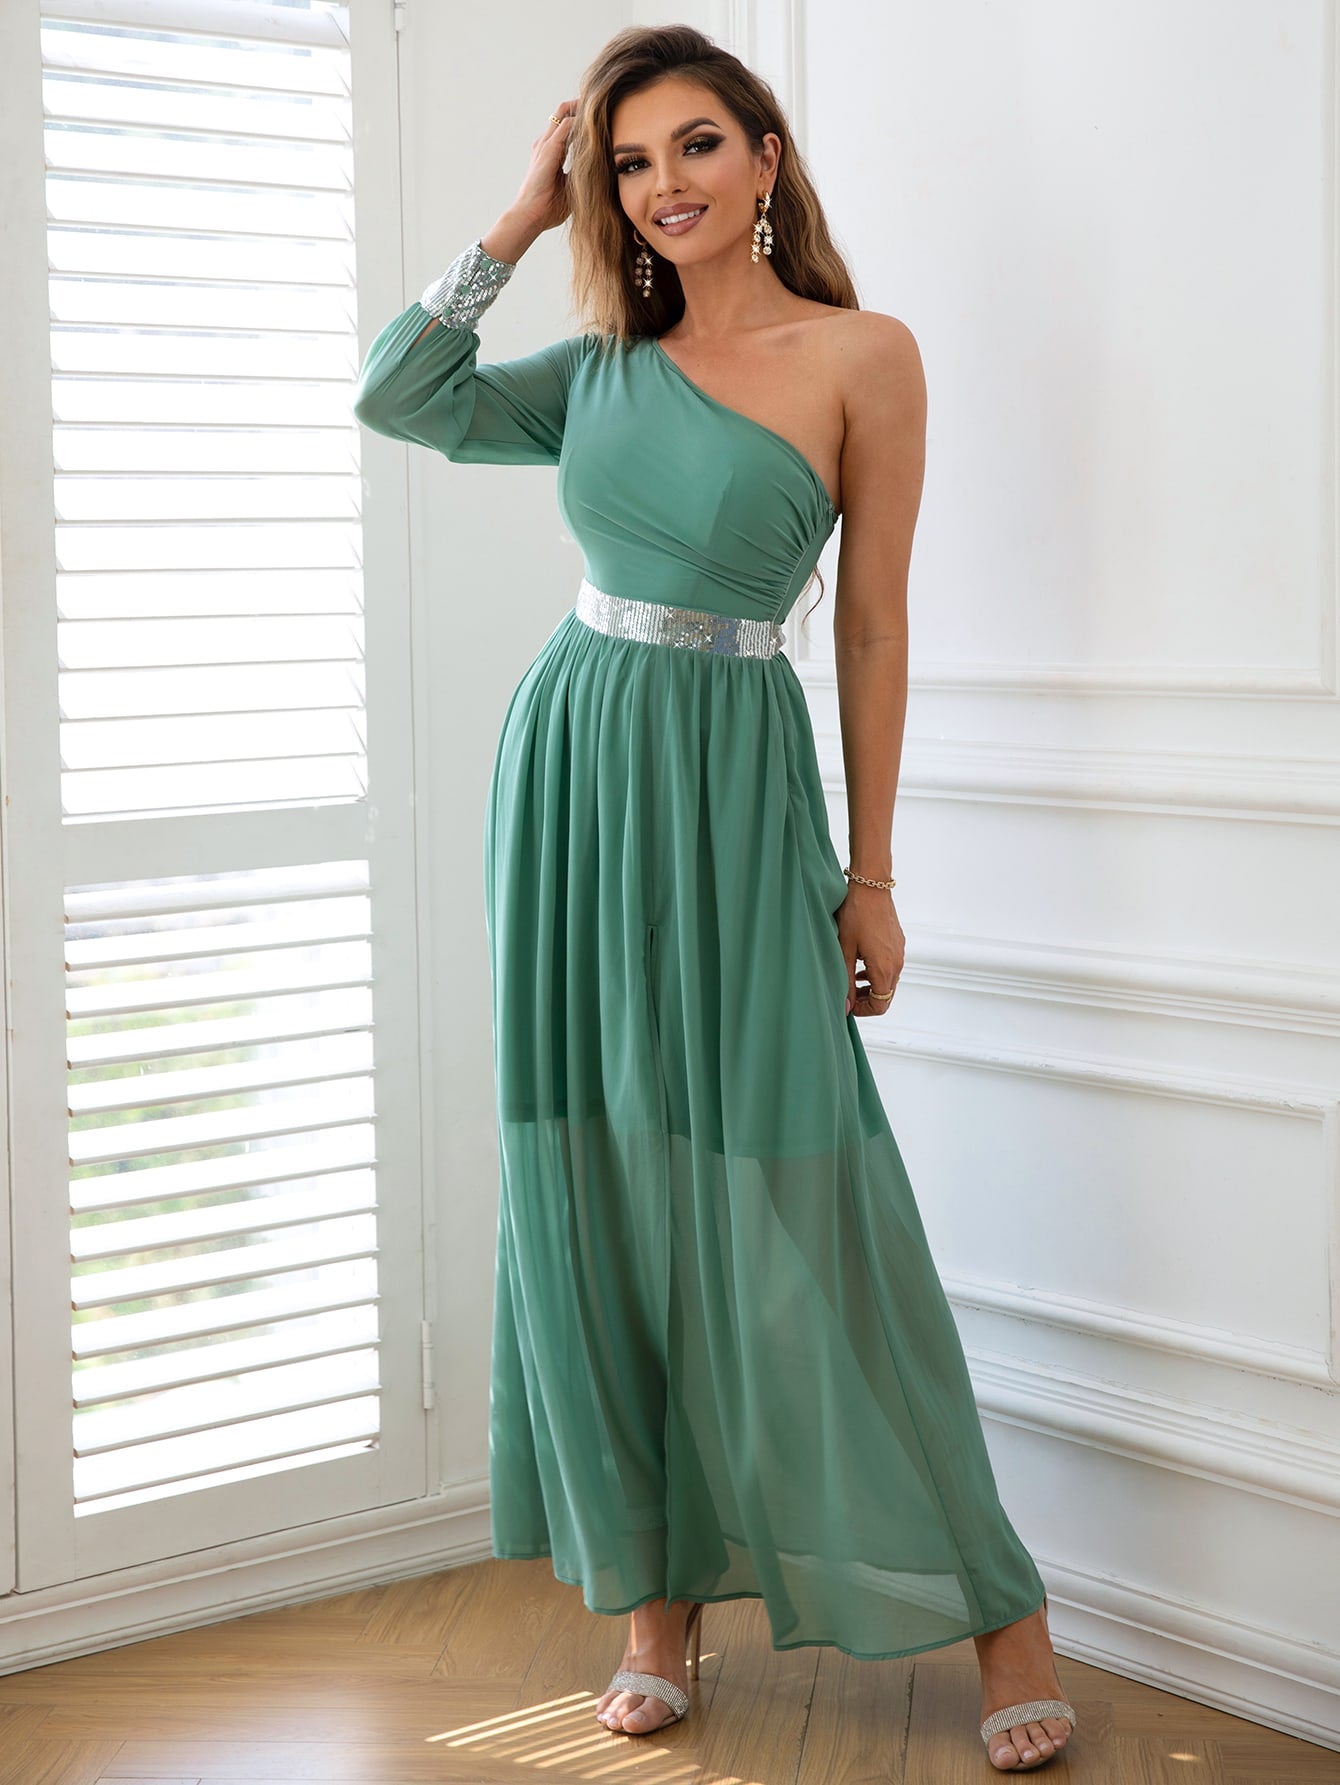 Contrast Sequin One-Shoulder Spilt Maxi Dress